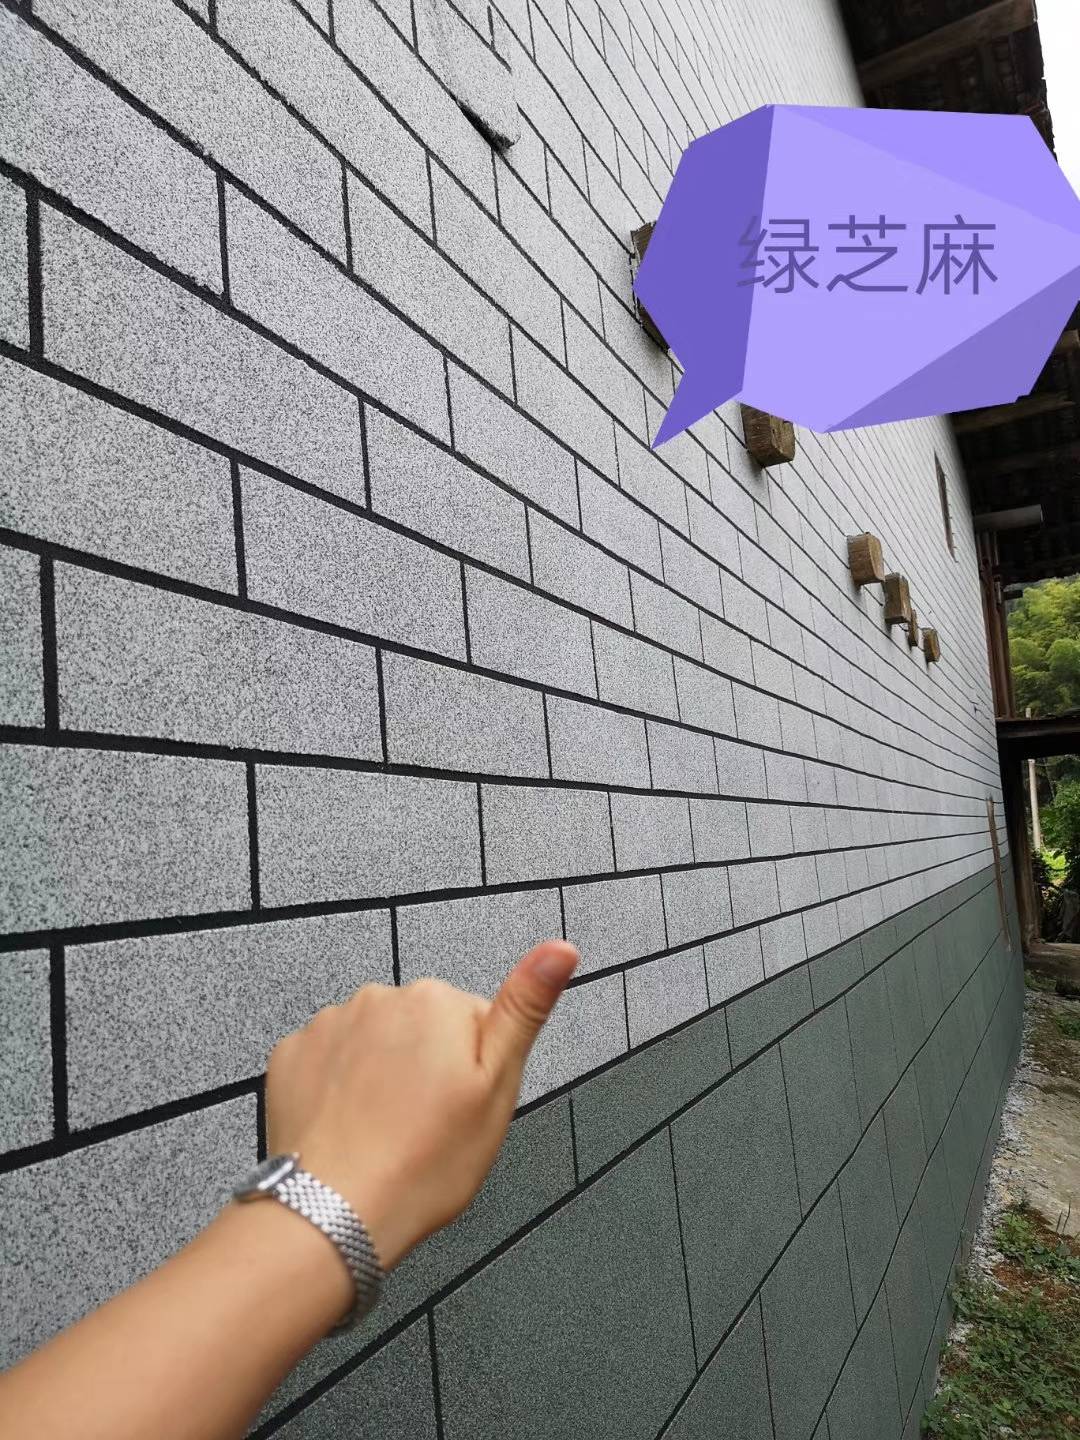 农村自建房外墙装修选择用"瓷砖"还是"艺术墙彩王"呢?